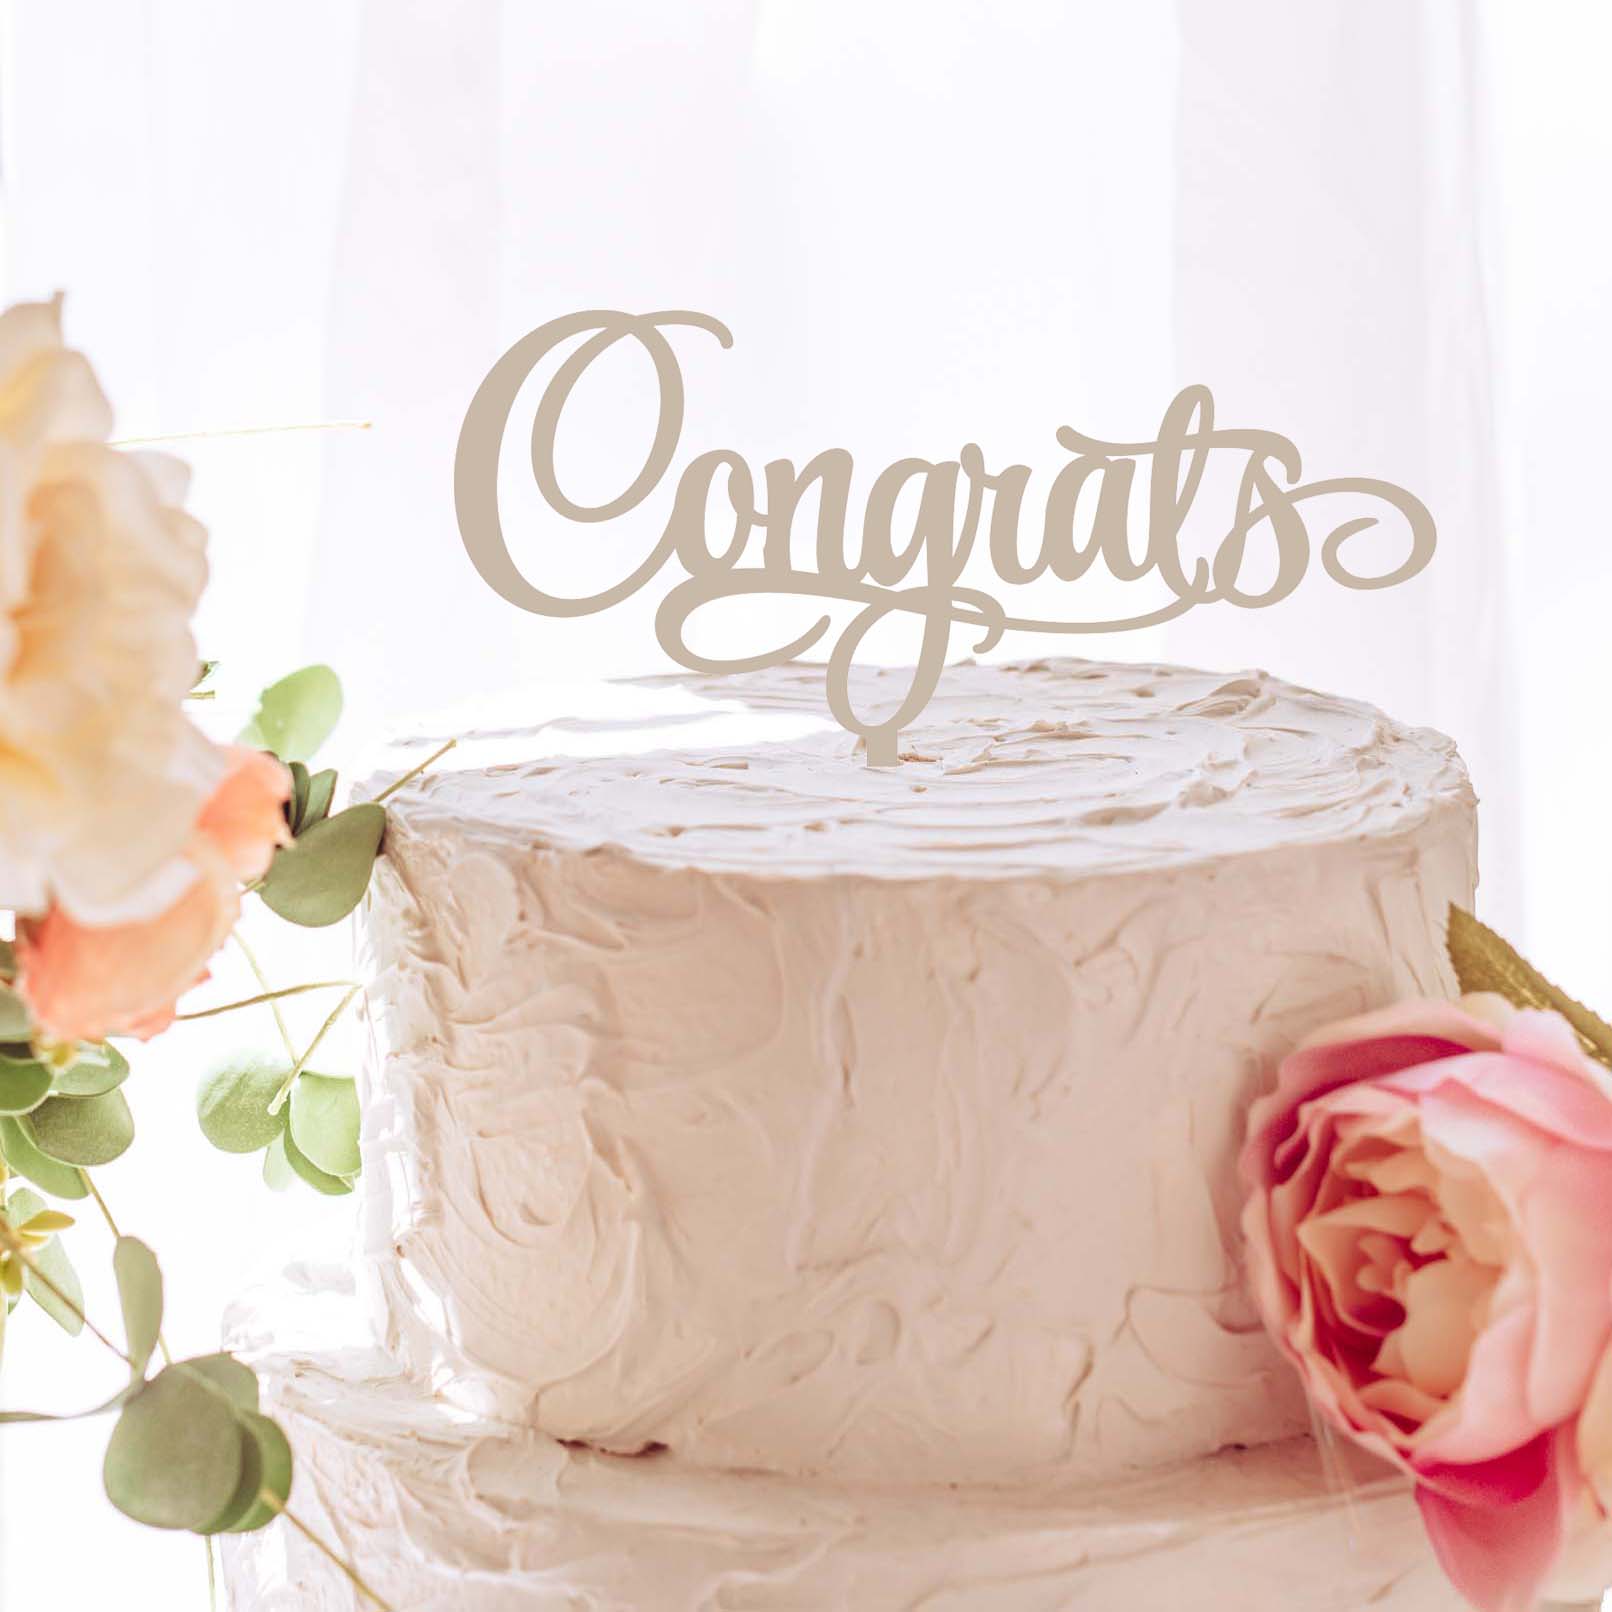 Congrats Cake Topper - Creative Gift Ideas